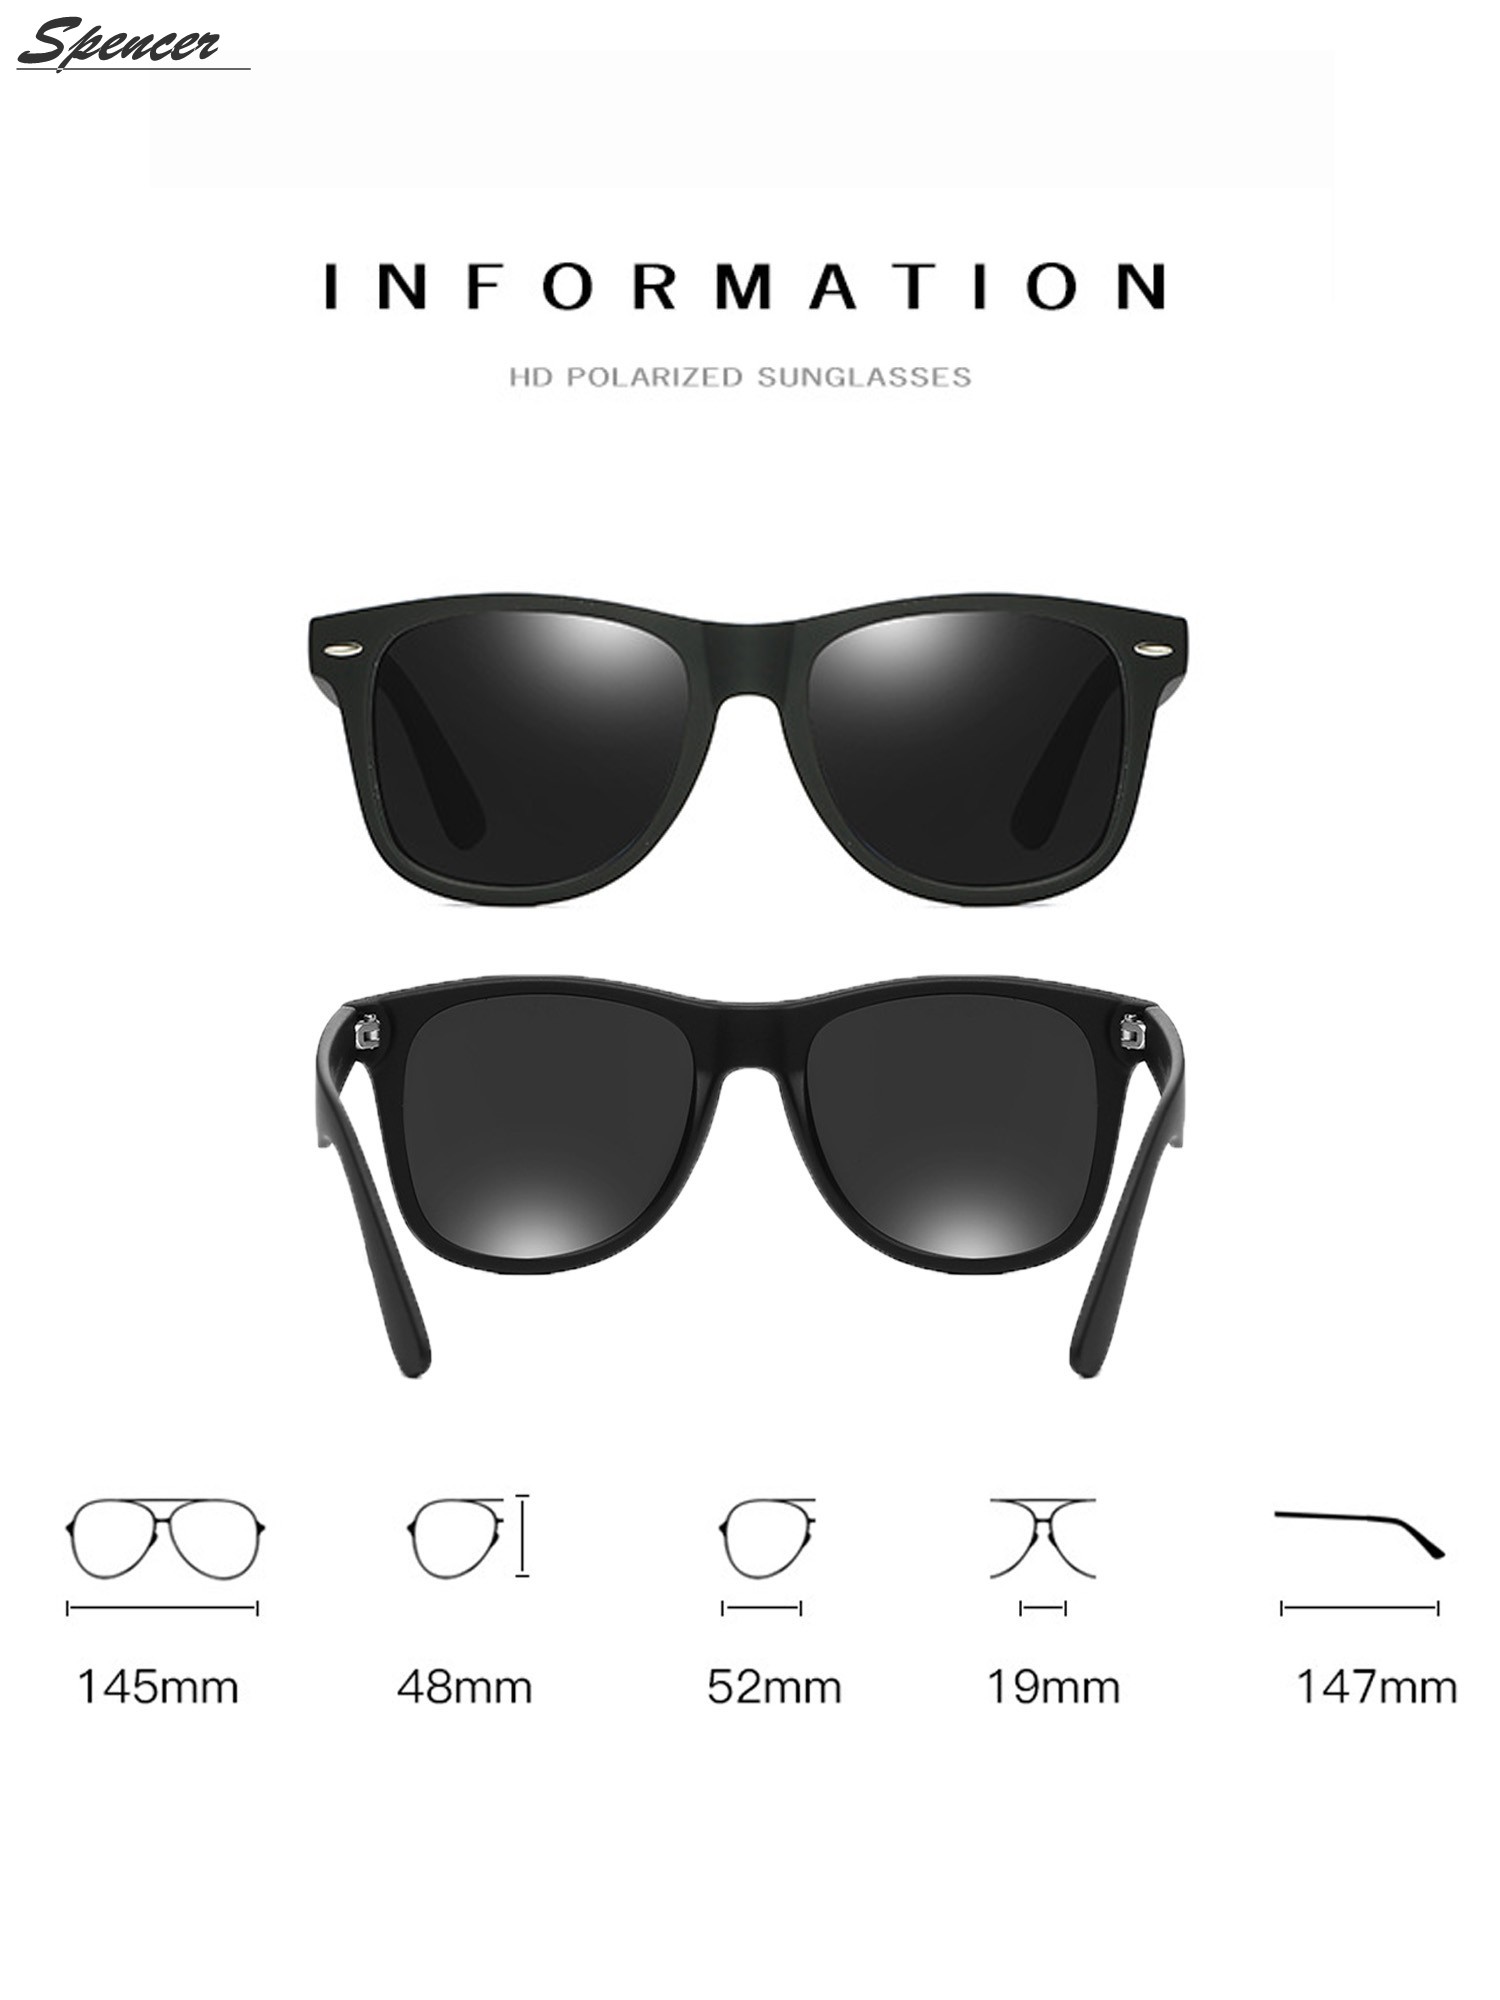 Spencer Retro HD Polarized Colored Mirrored Lens Sunglasses Ultralight Driving UV400 Eyewear Glasses for Men Women "Black+Gray " - image 3 of 6